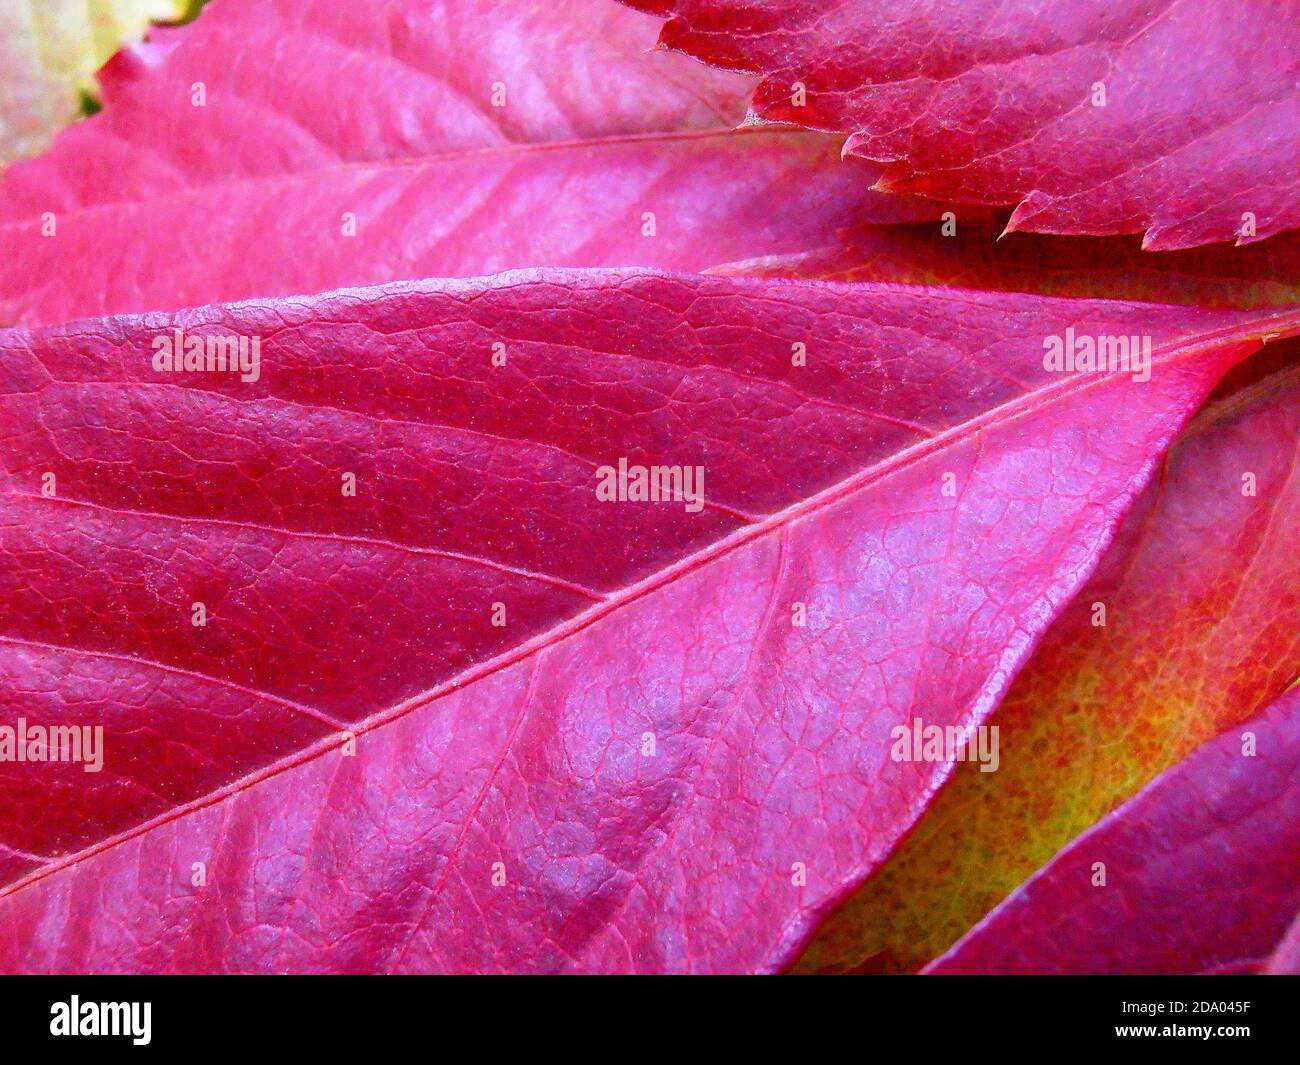 Rote Blätter mit Mustern, rote Blätter Makro, Herbstblätter, Makrofotografie, Stock Bild Stockfoto